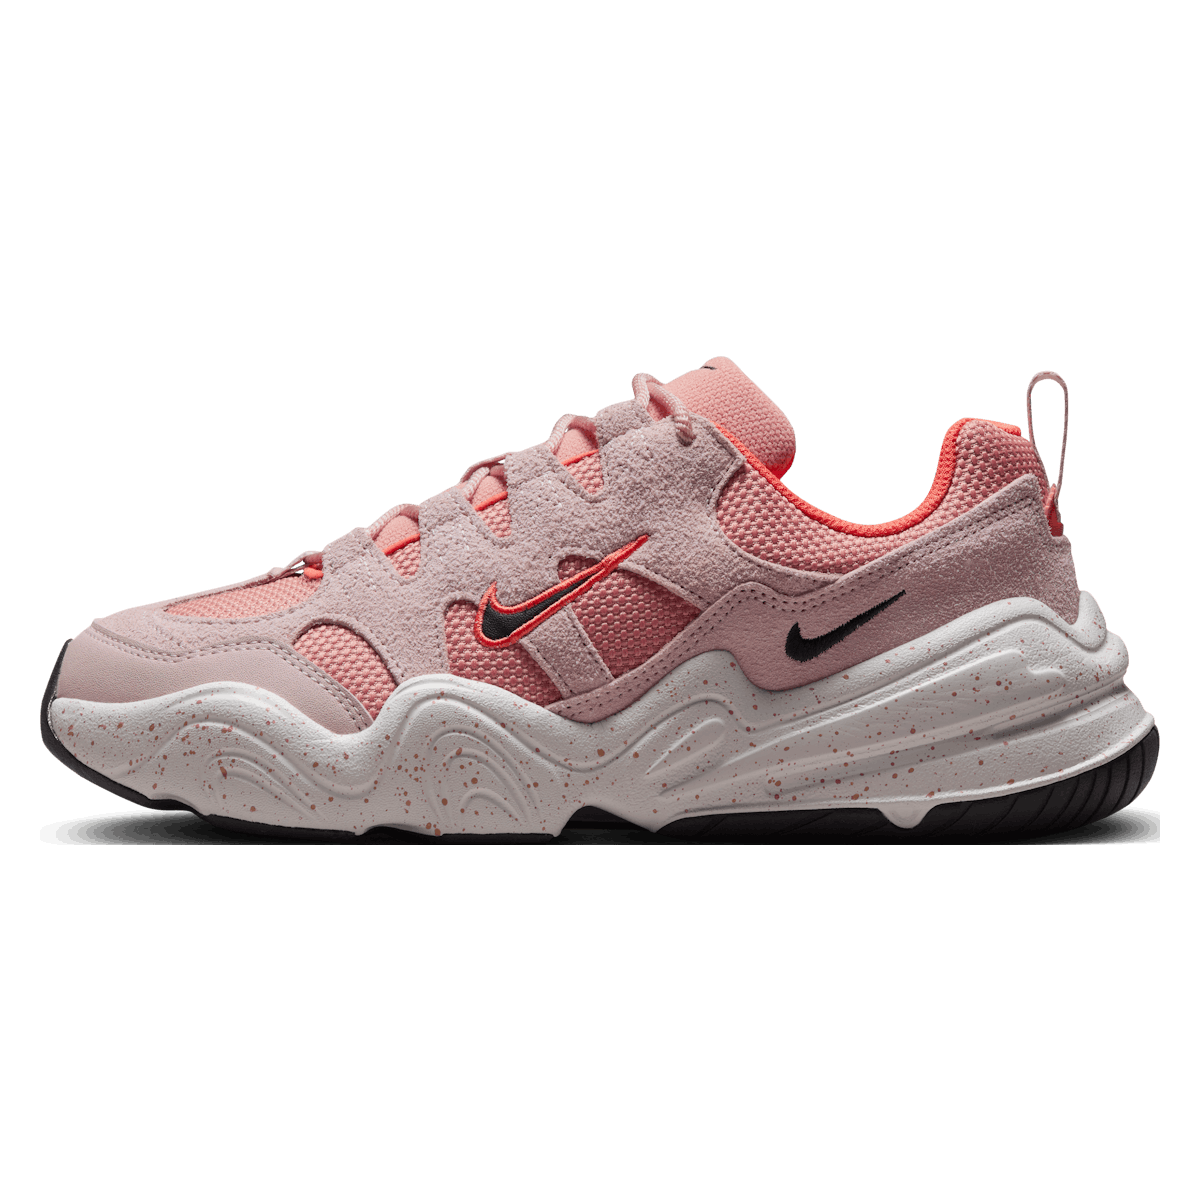 Nike Tech Hera Wmns "Pink Oxford"